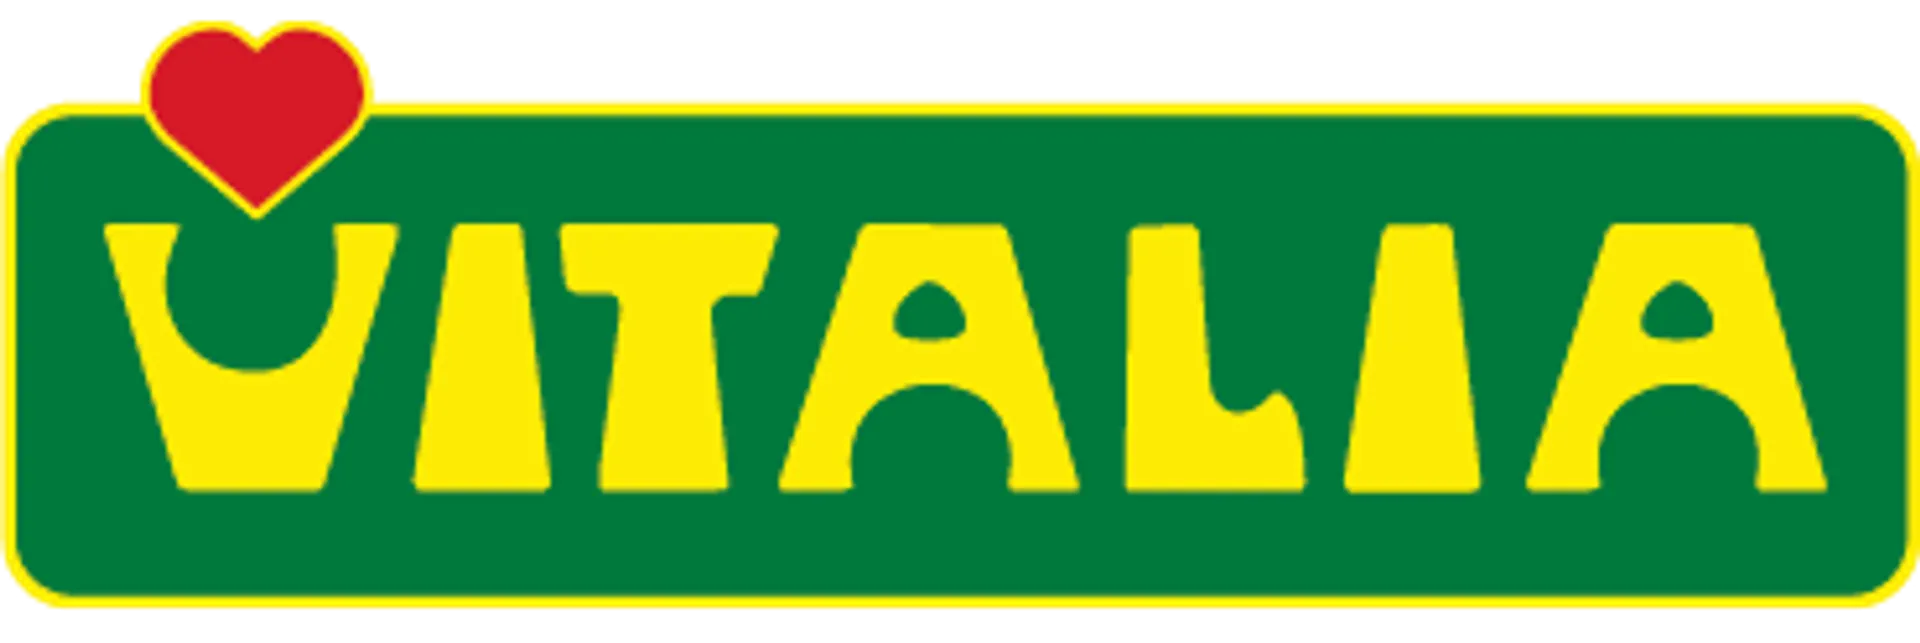 VITALIA logo die aktuell Flugblatt